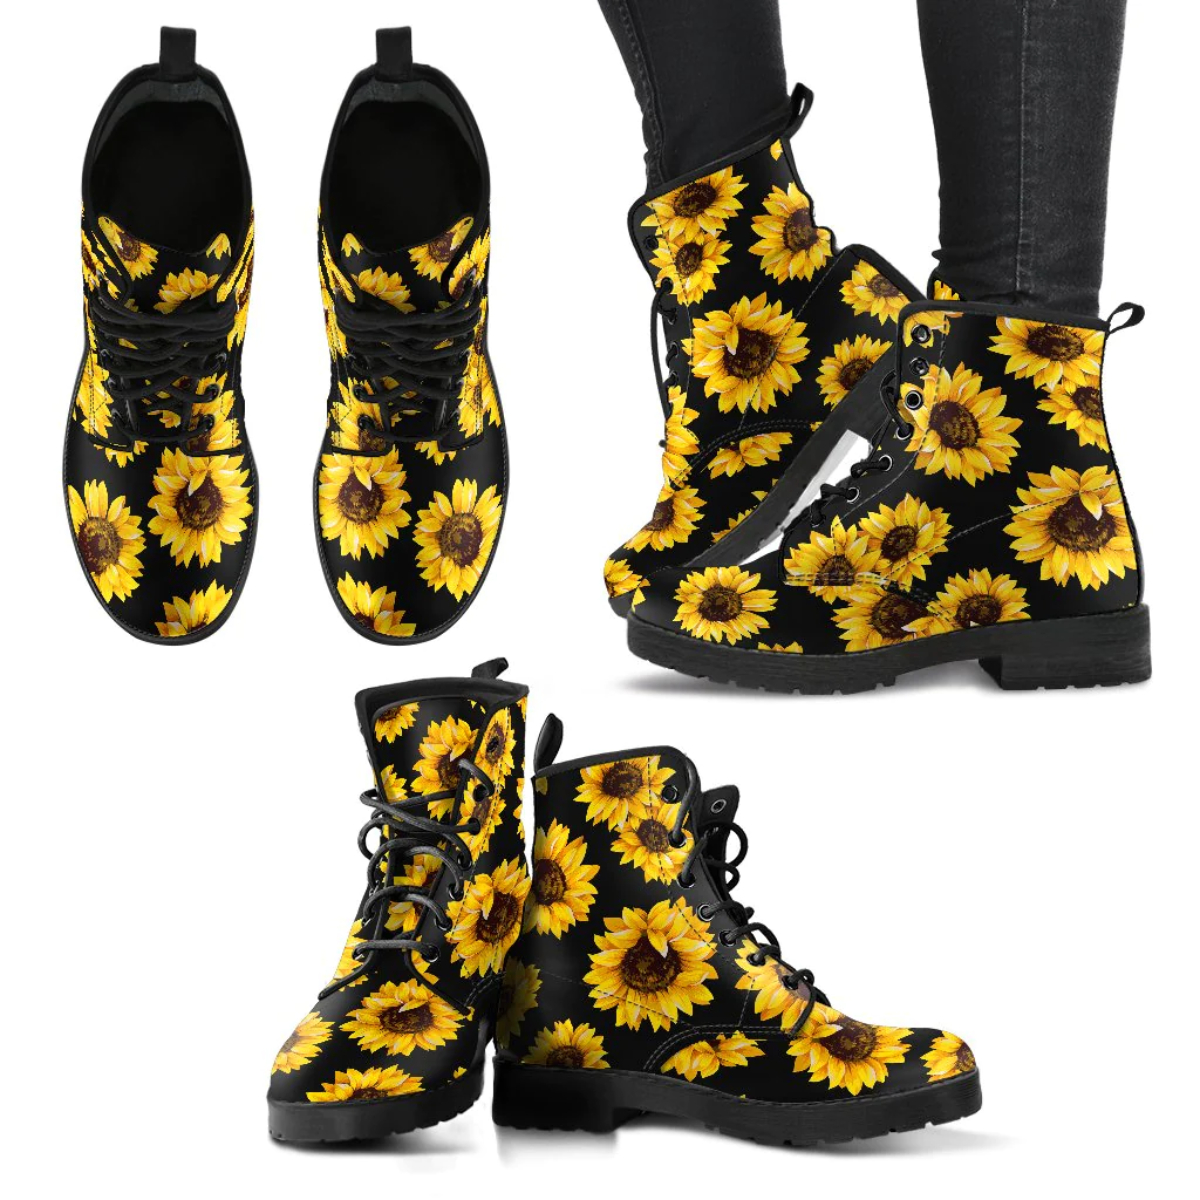 Sunflower Boots Style For Women and Men V01 - EvaPurses